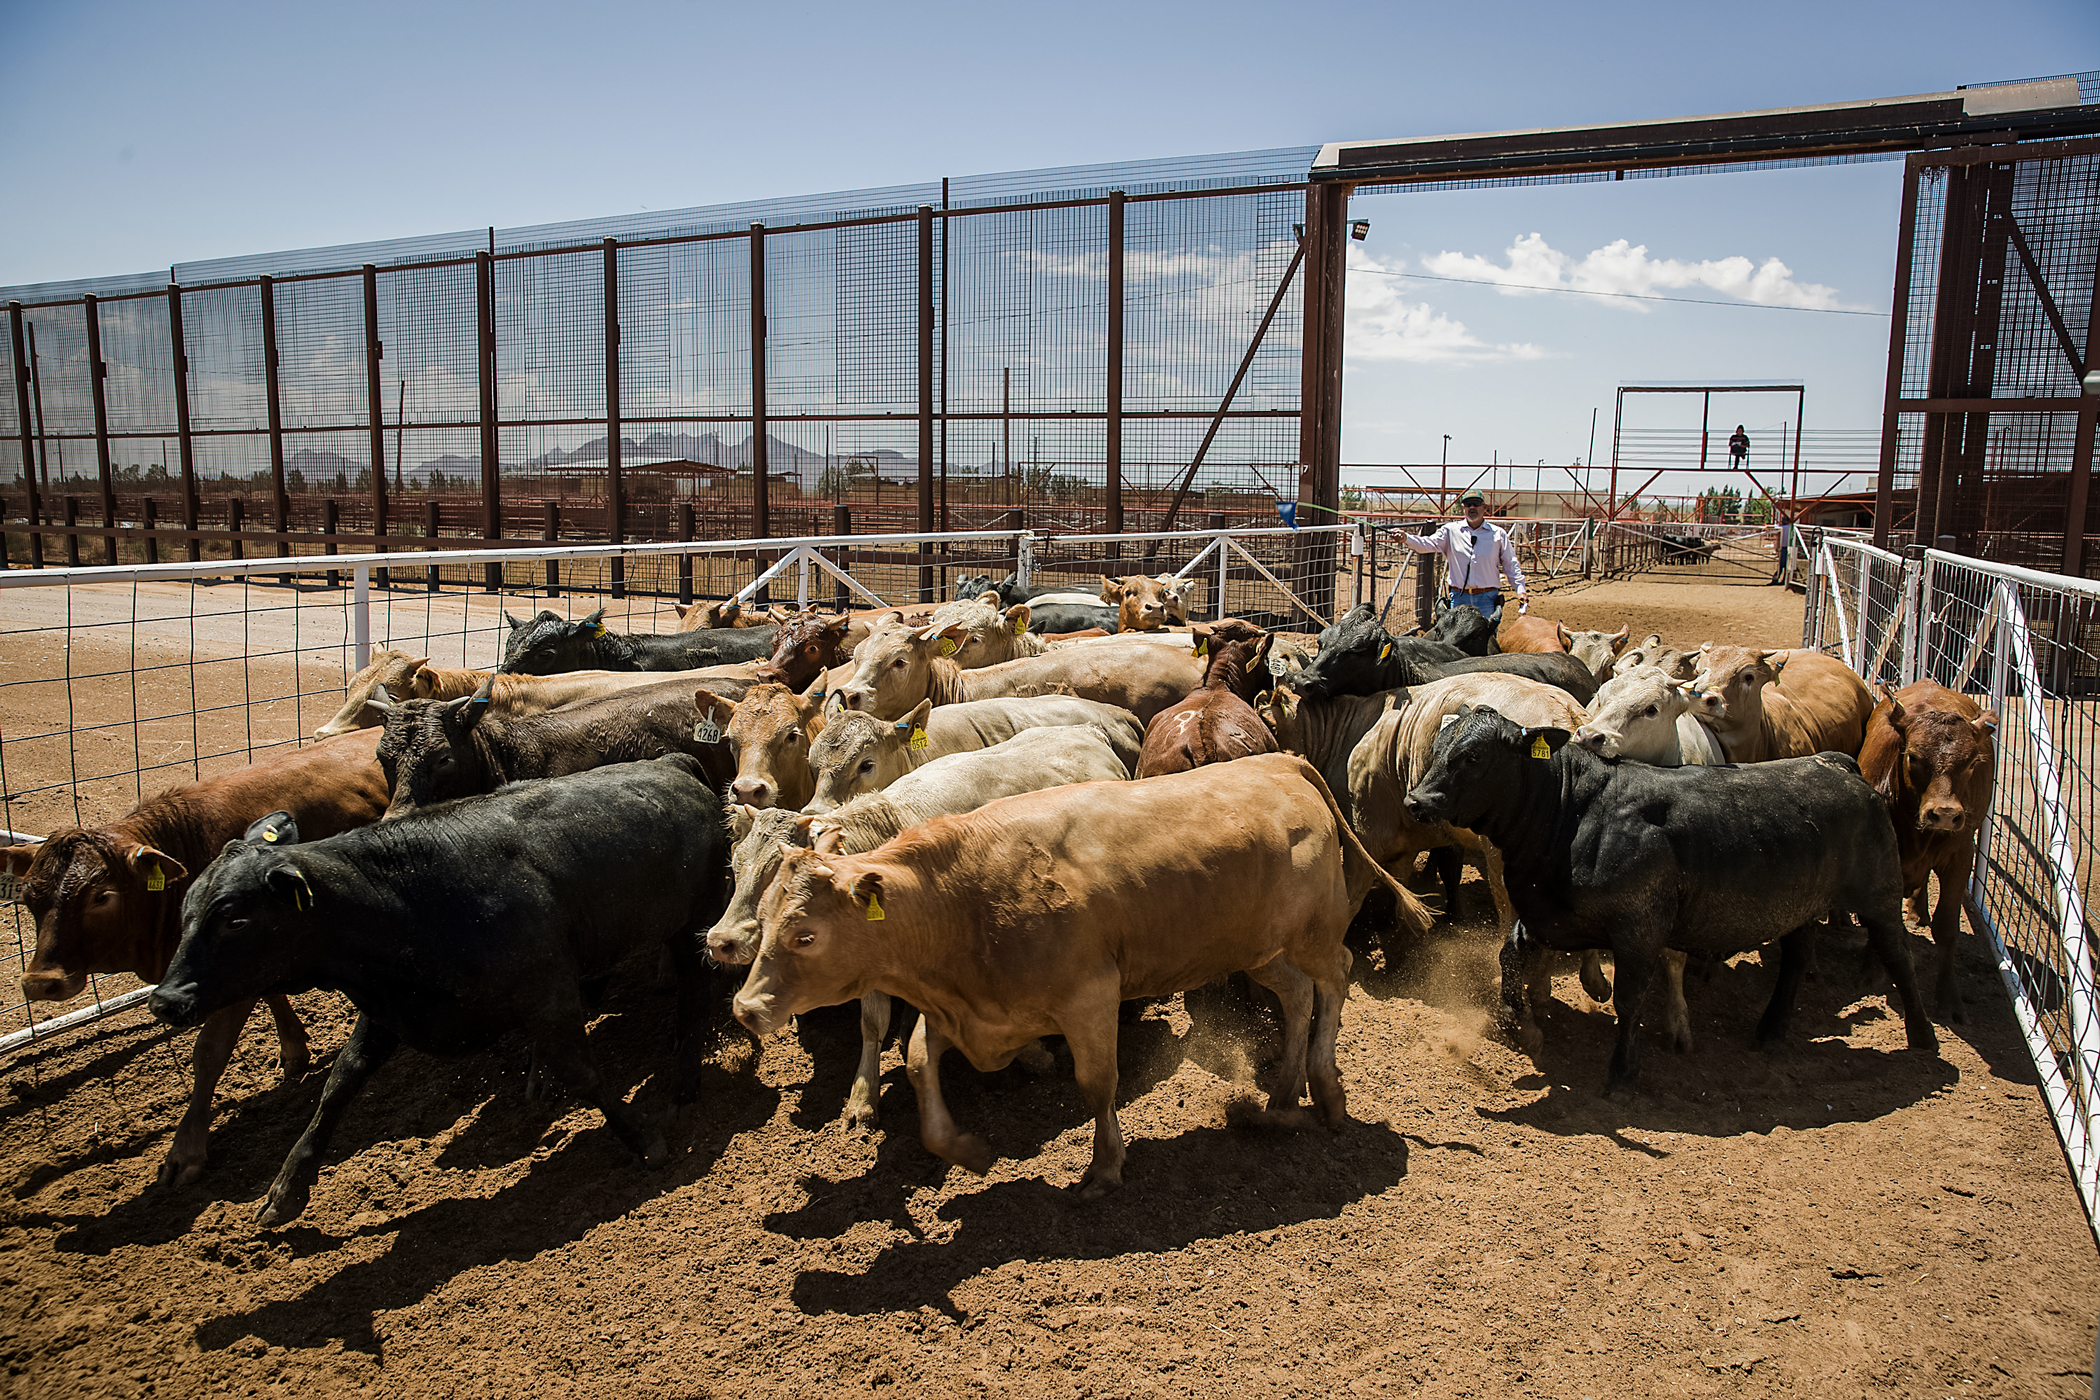 Ông Carlos Carreron đưa gia súc đi qua một cánh cổng bên trong hàng rào biên giới từ Mexico vào Hoa Kỳ tại Santa Teresa International Export/Comportock Crossing ở Santa Teresa, New Mexico, vào ngày 05/06/2019. (Ảnh: Joe Raedle/Getty Images)